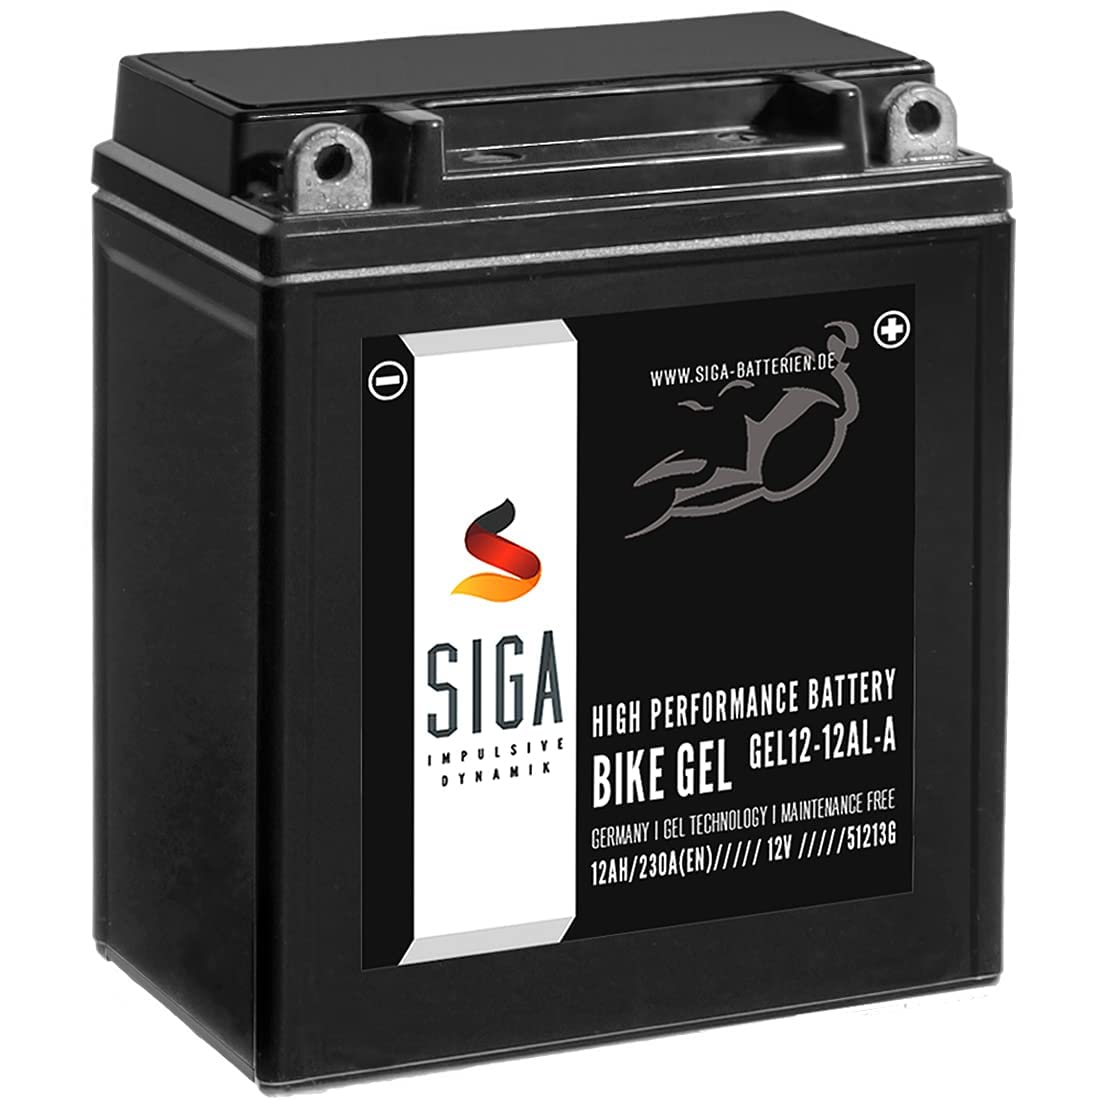 SIGA GEL Motorradbatterie 12V 12Ah 230A/EN GEL Batterie YB12AL-A2 GEL12-12AL-A YB12AL-A für XV 535 und F 650 von SIGA IMPULSIVE DYNAMIK